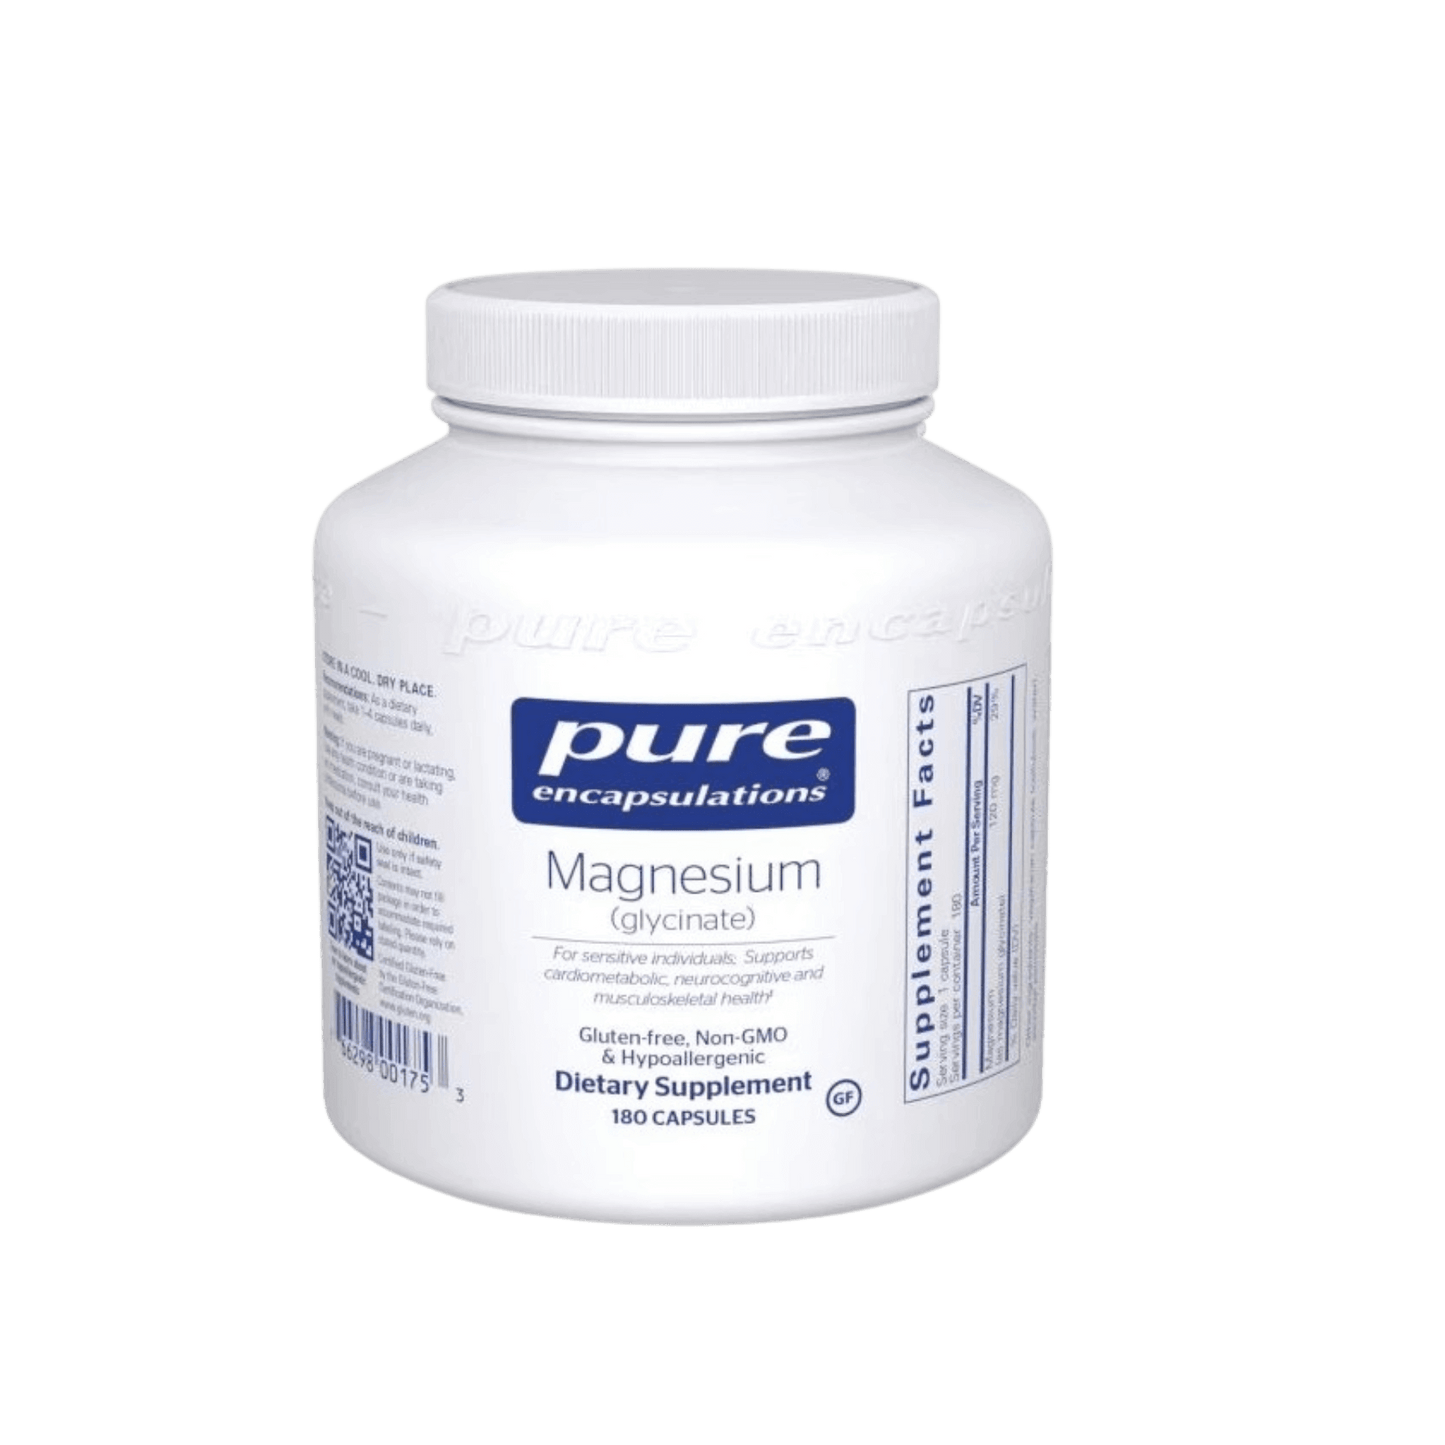 Pure Encapsulations Magnesium Glycinate Capsules